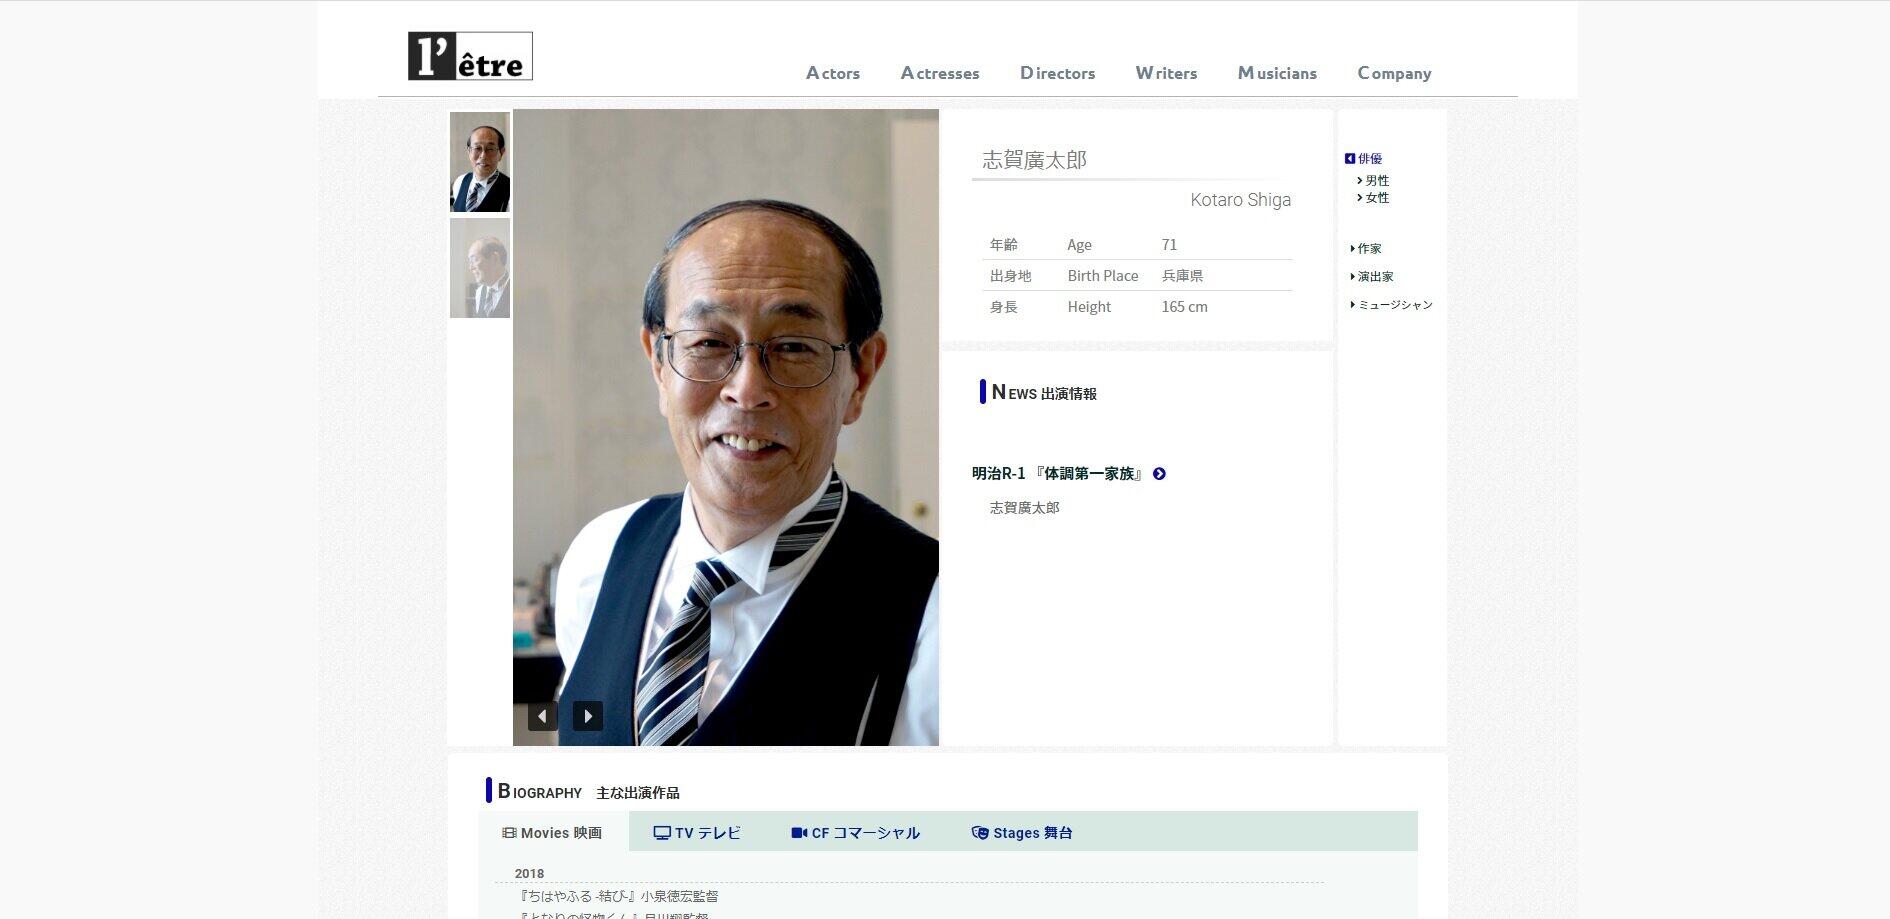 画像は志賀廣太郎さん所属事務所の公式サイトのスクリーンショット
